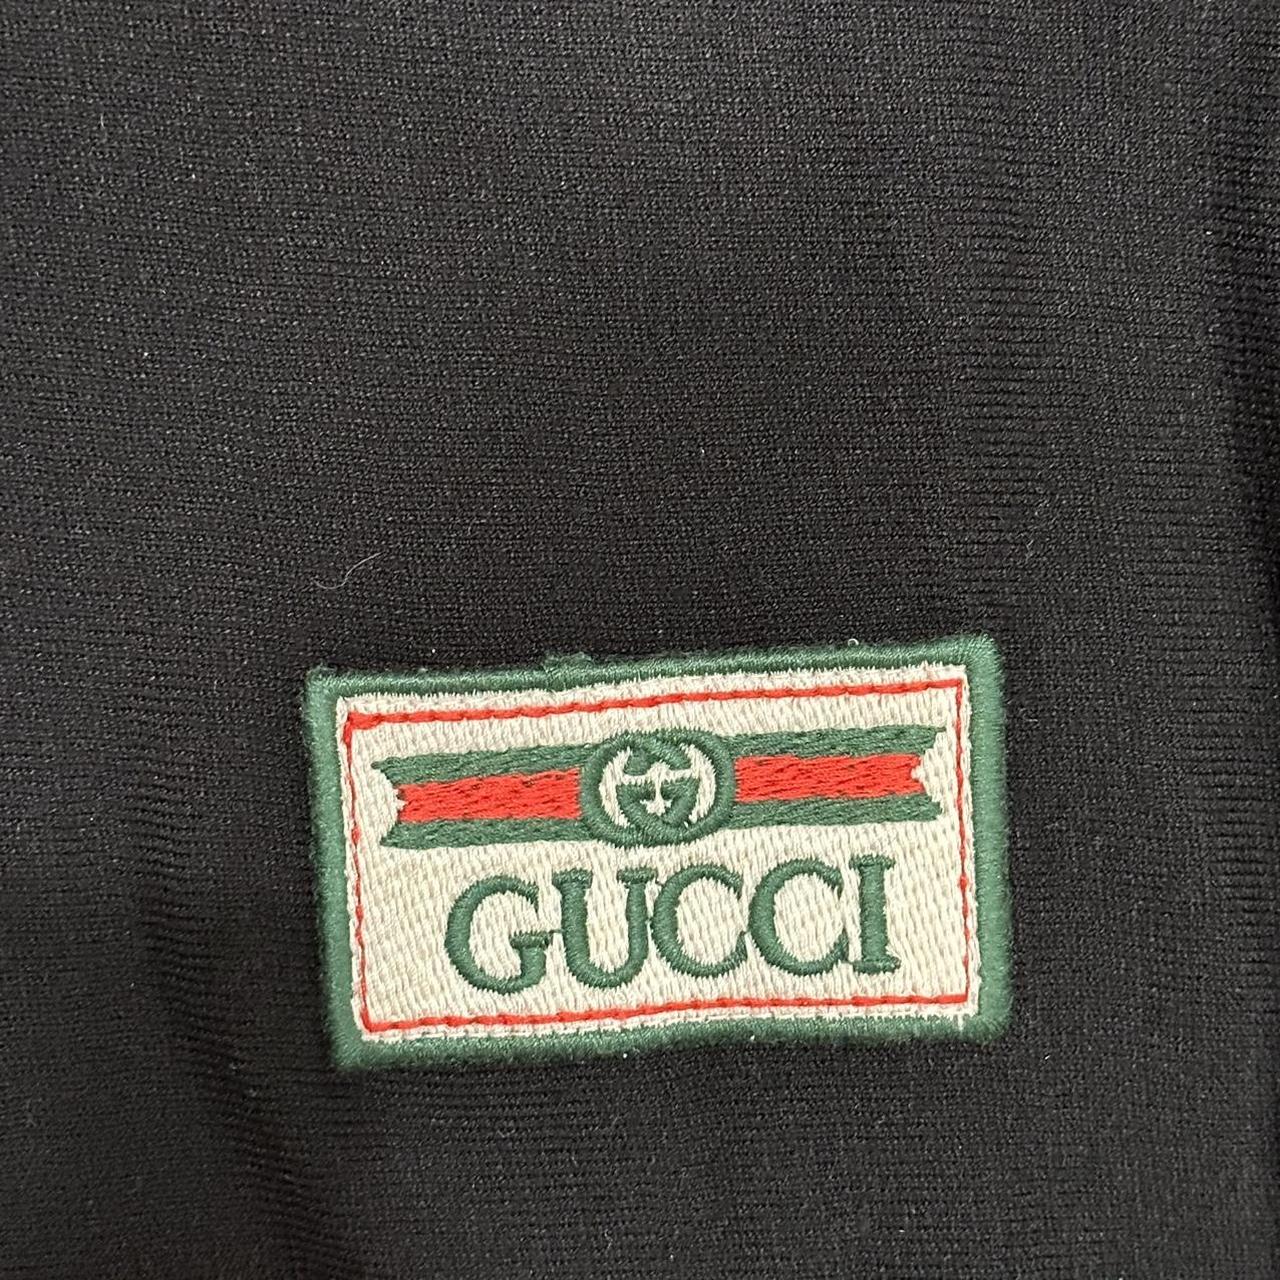 Gucci Men's T-shirt | Depop